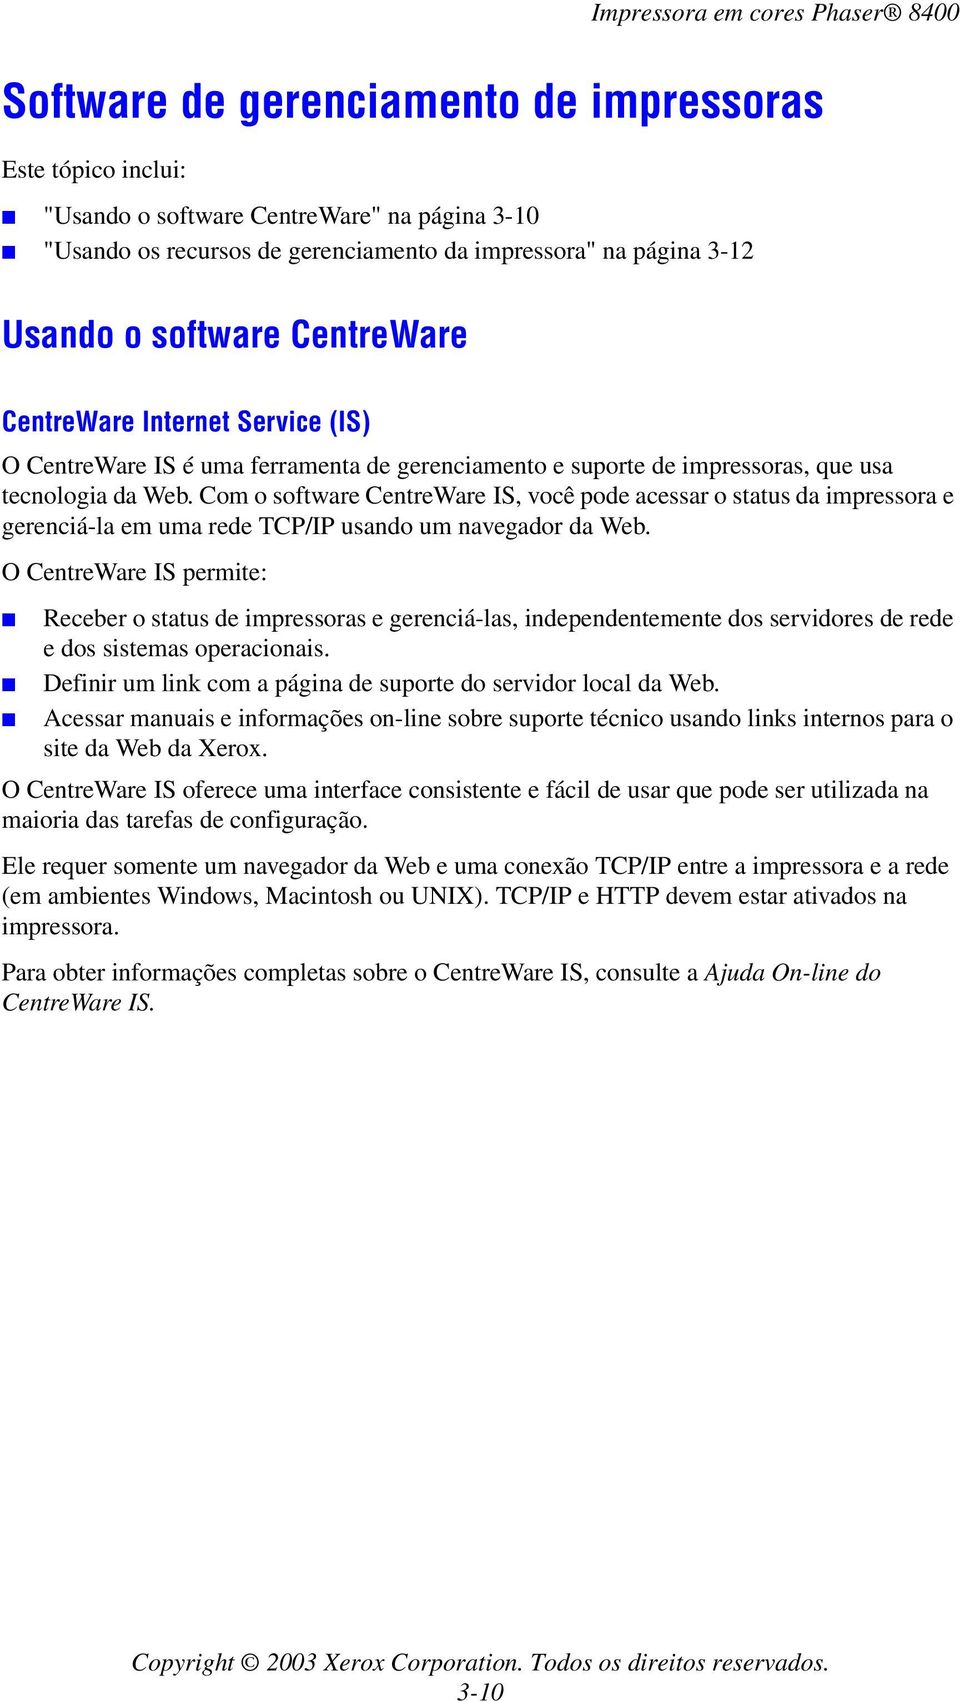 Com o software CentreWare IS, você pode acessar o status da impressora e gerenciá-la em uma rede TCP/IP usando um navegador da Web.